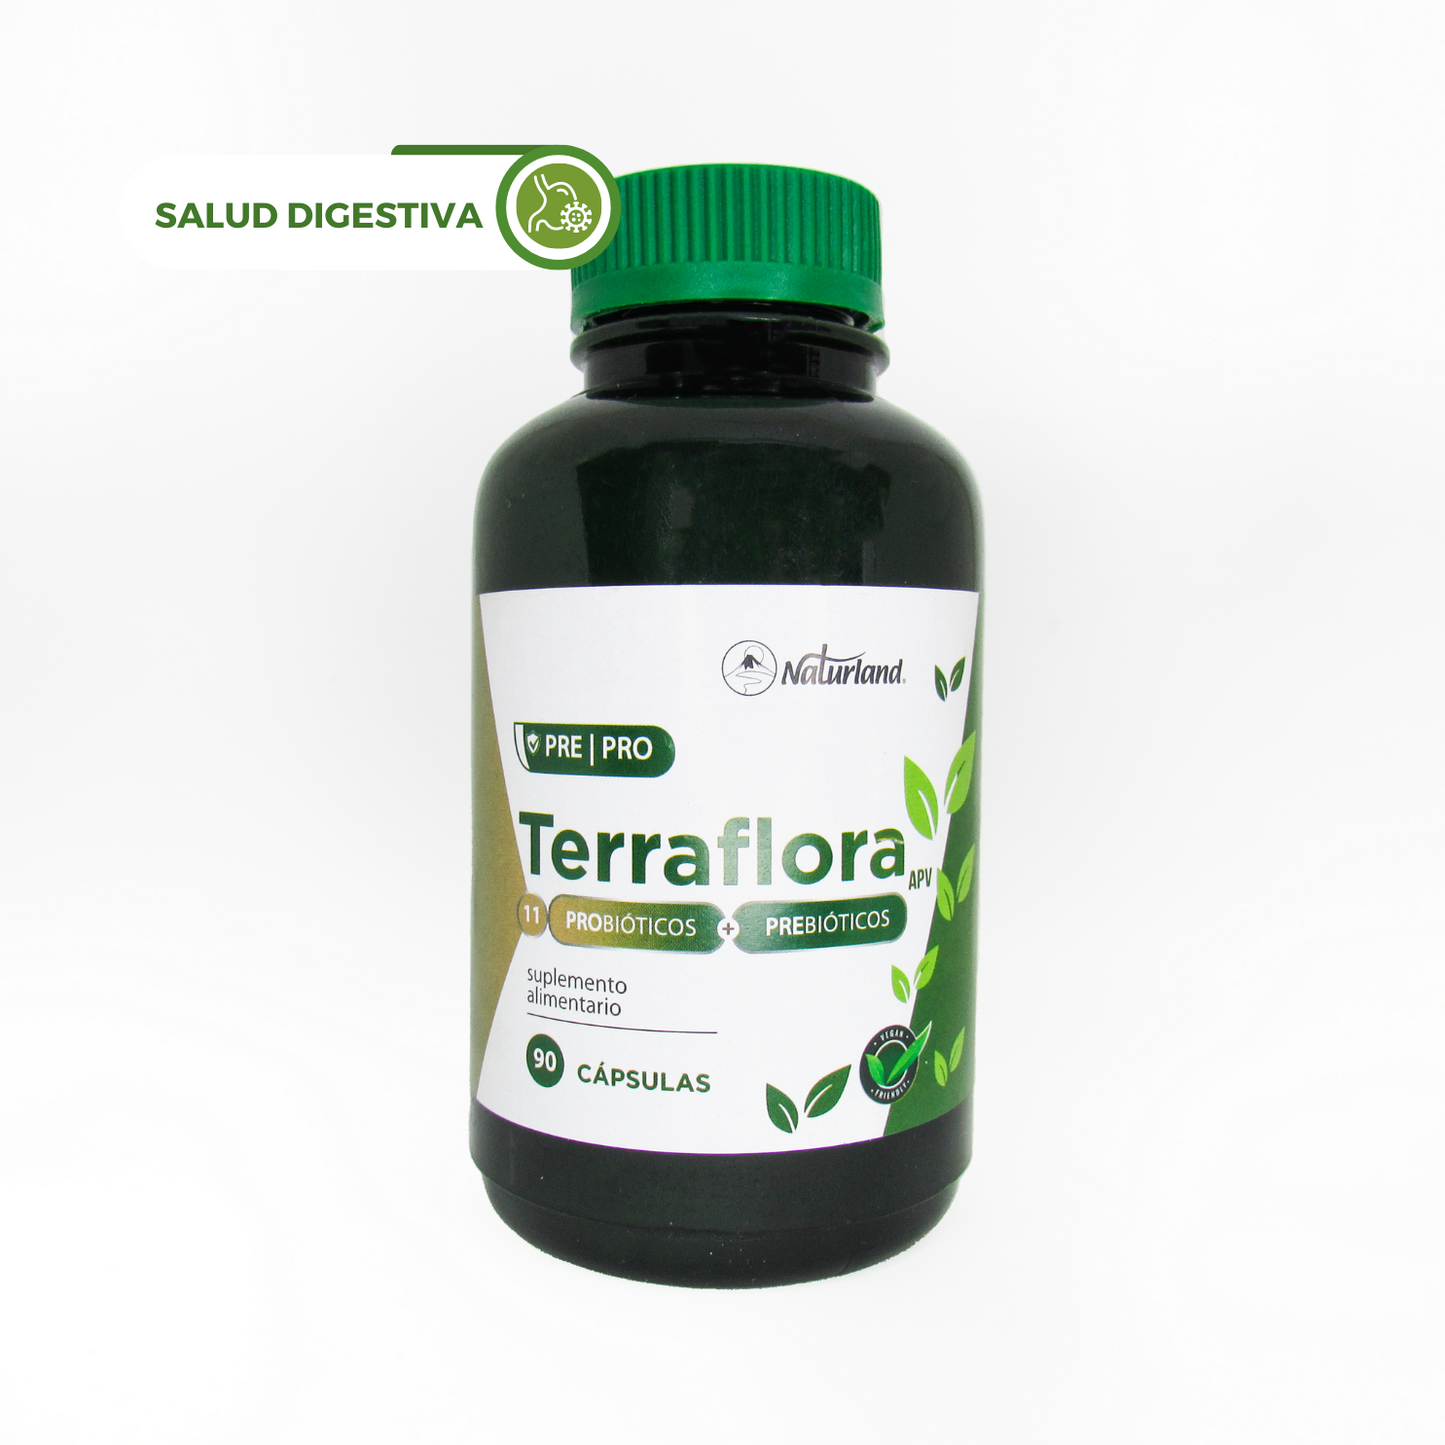 Terraflora Vegano 11 Probioticos más prebiotico Naturland 90 Capsulas